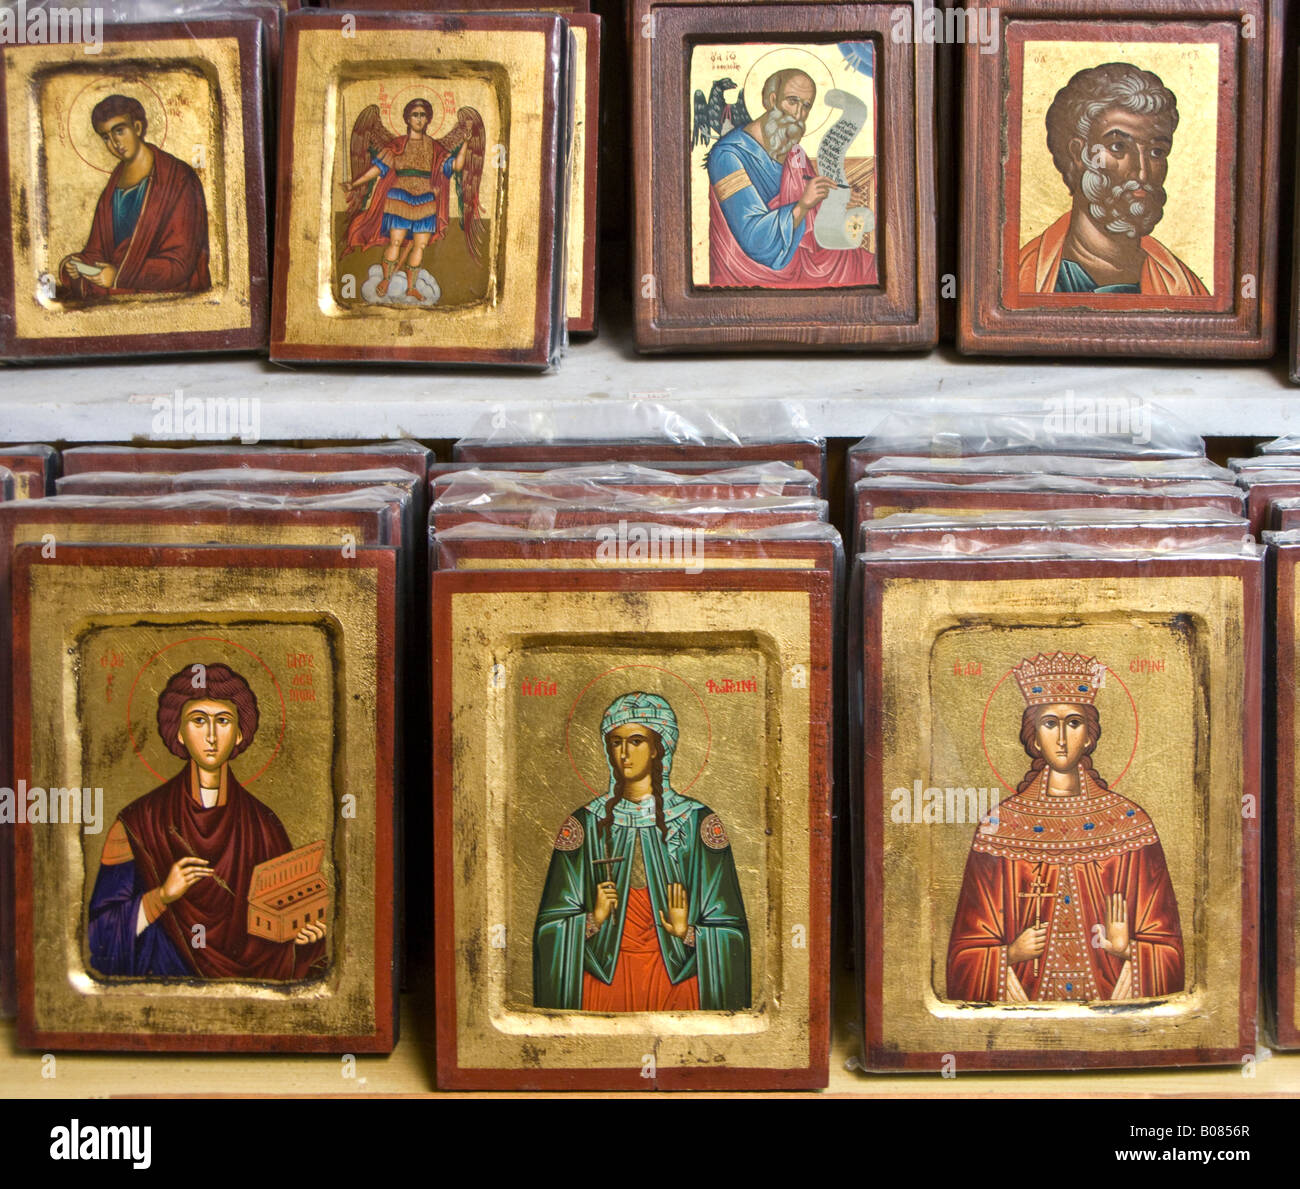 Icônes de souvenirs, boutique touristique, monastère d'Hosios Loukas, Béotie province, Grèce Banque D'Images